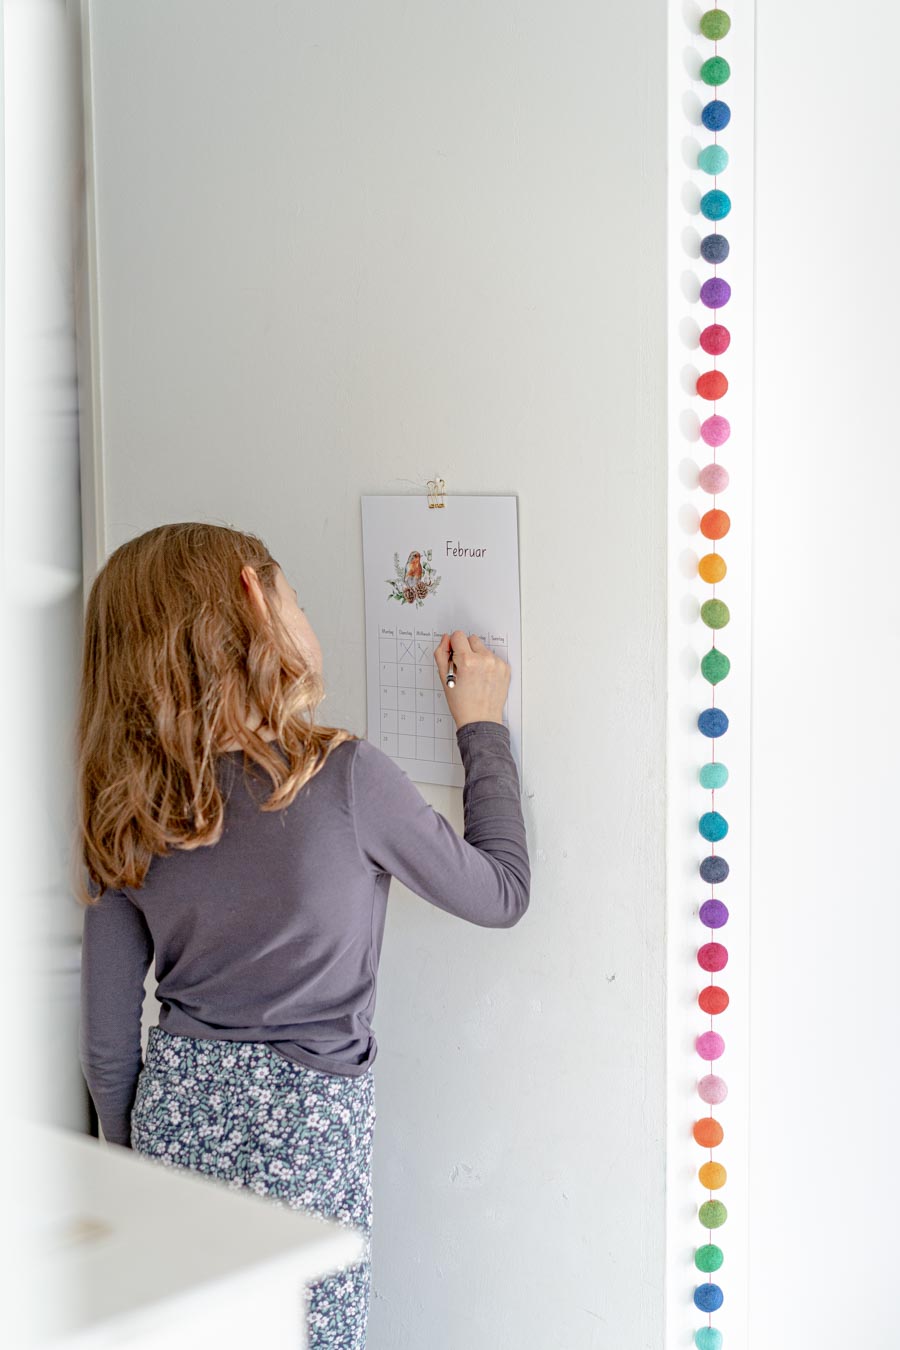 Druckvorlage Kalender für Kinder • DIY Kalender • Spielerisch Zeitgefühl lernen ✓ Jetzt Abo lösen & PDF downloaden